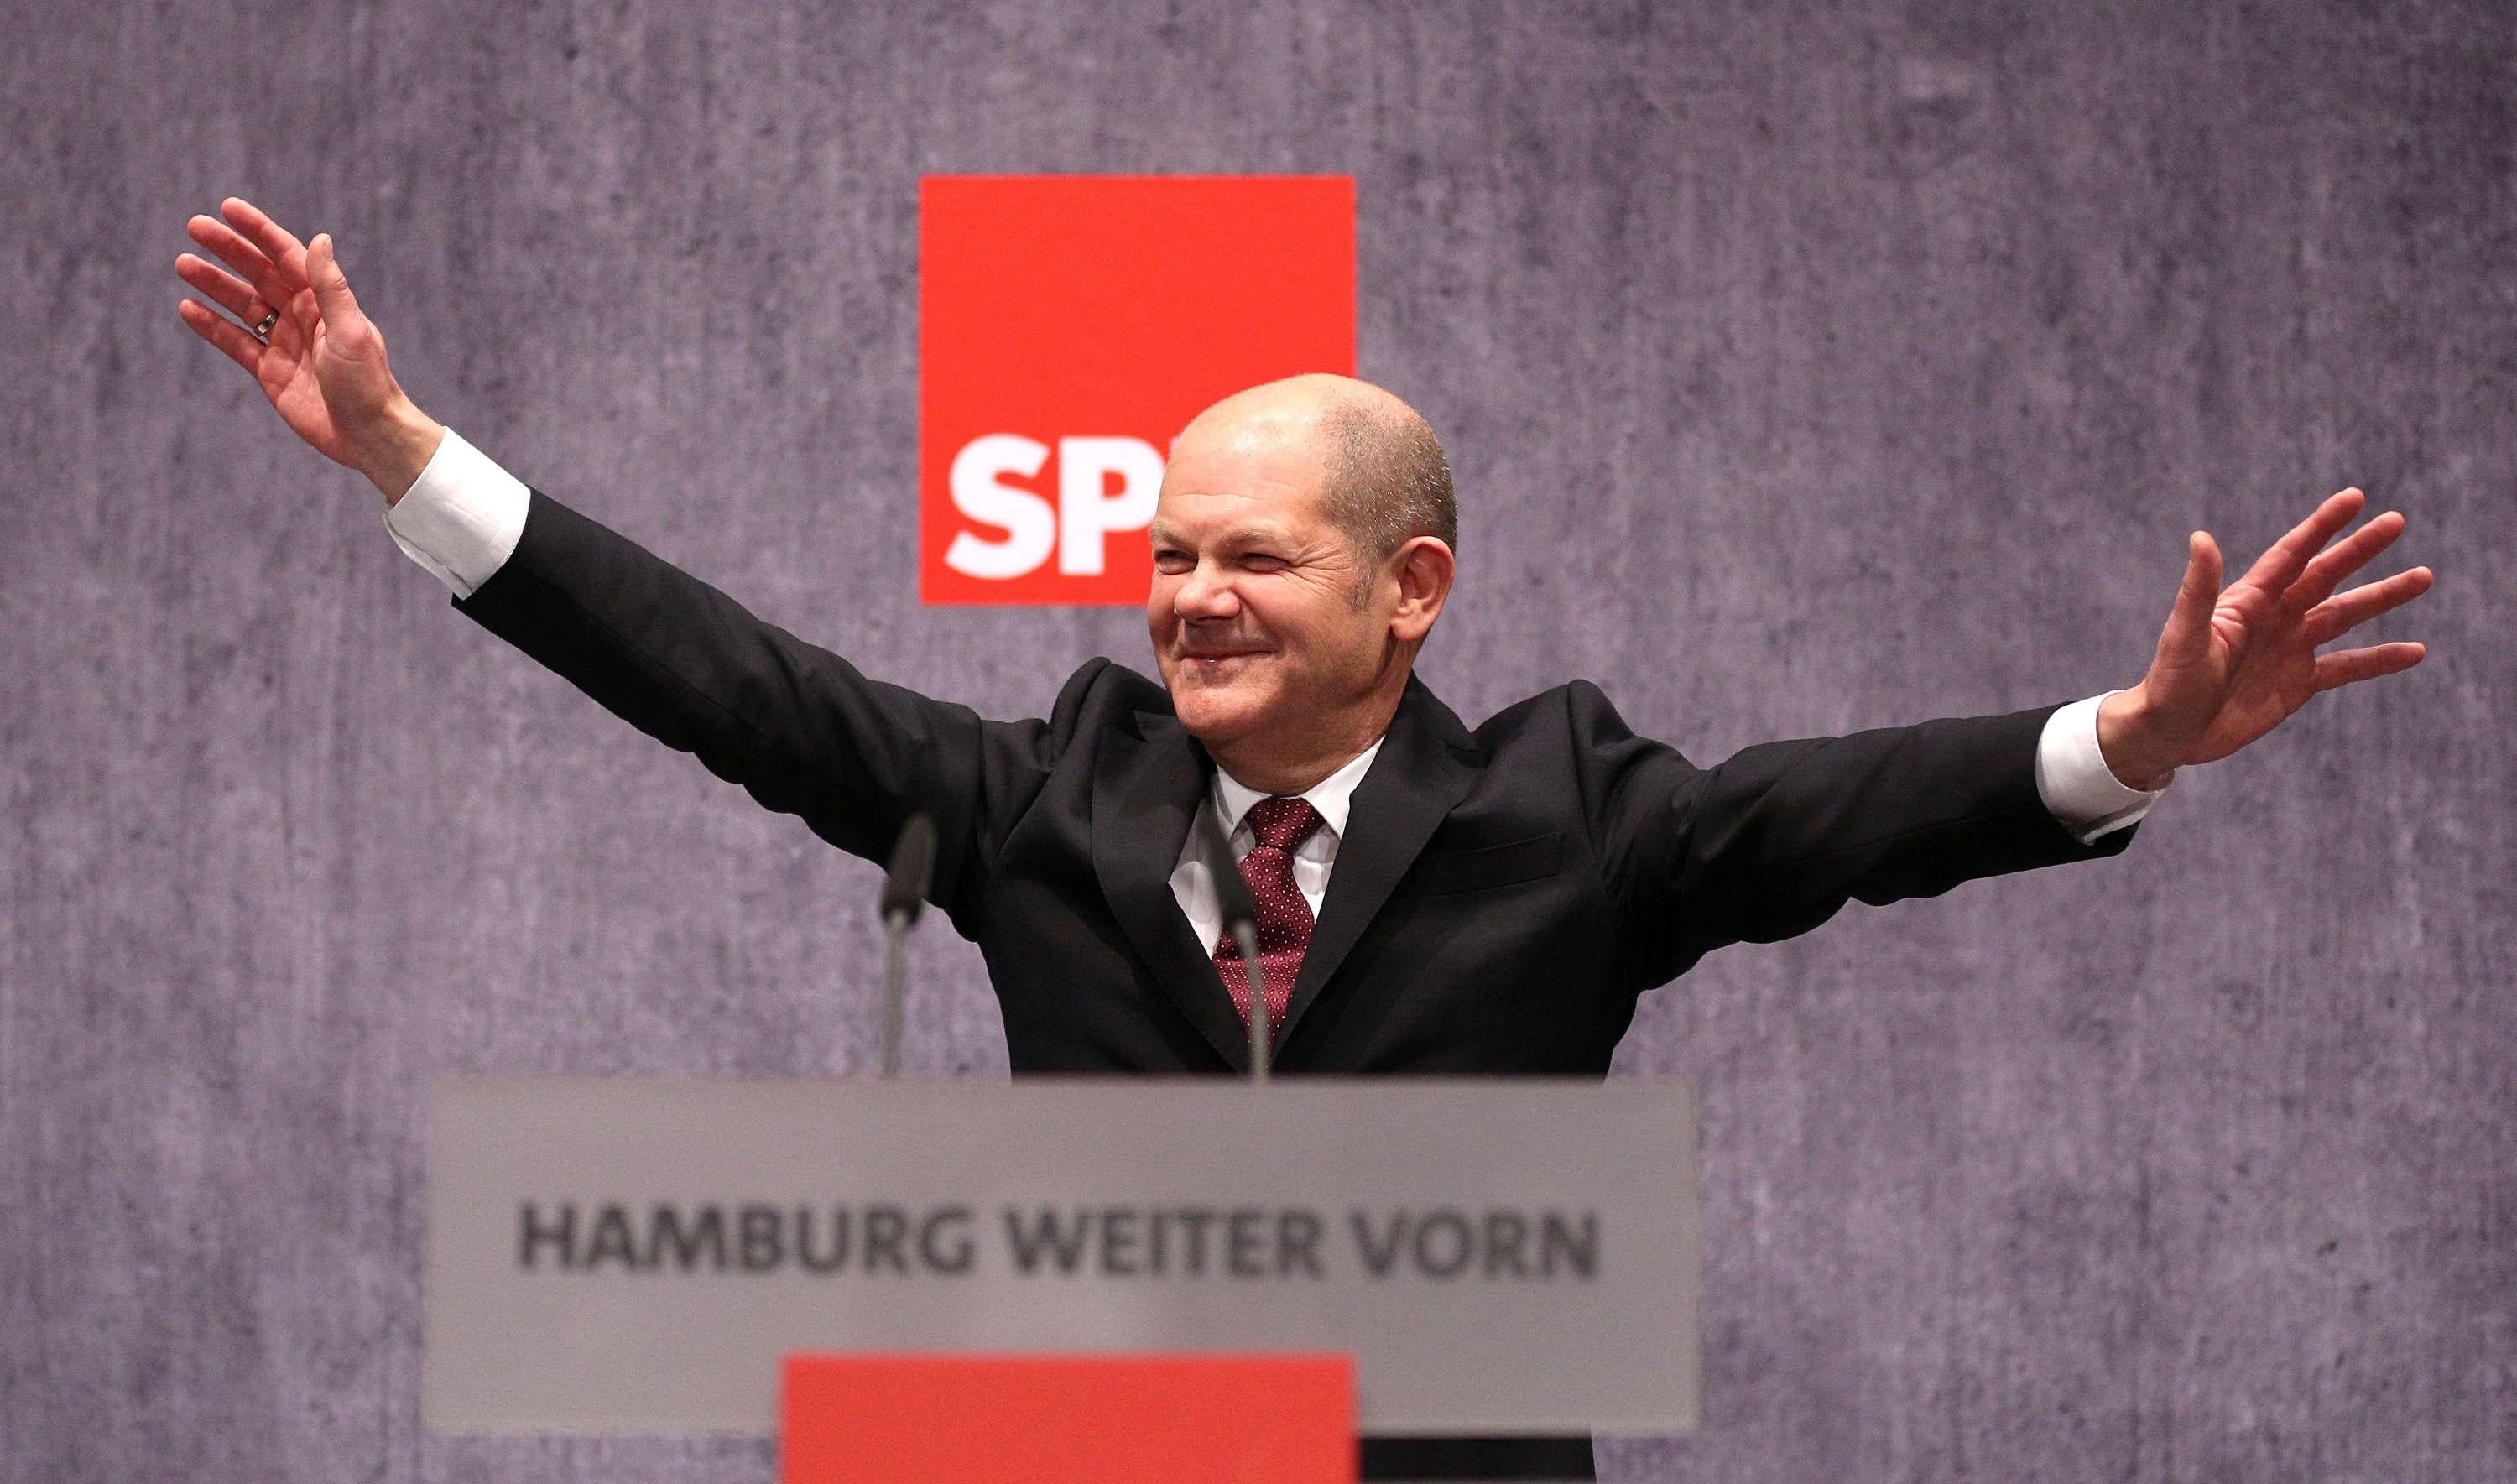 Die Zeit døbte i 2003 Olaf Scholz Scholzomaten på grund af hans tørre, funktionæragtige stil og tone. Den tidligere generalsekretær for SPD er i dag borgmester i Hamborg, som han mener har meget tilfælles med København og det øvrige Skandinavien.
Foto: Polfoto/DPA